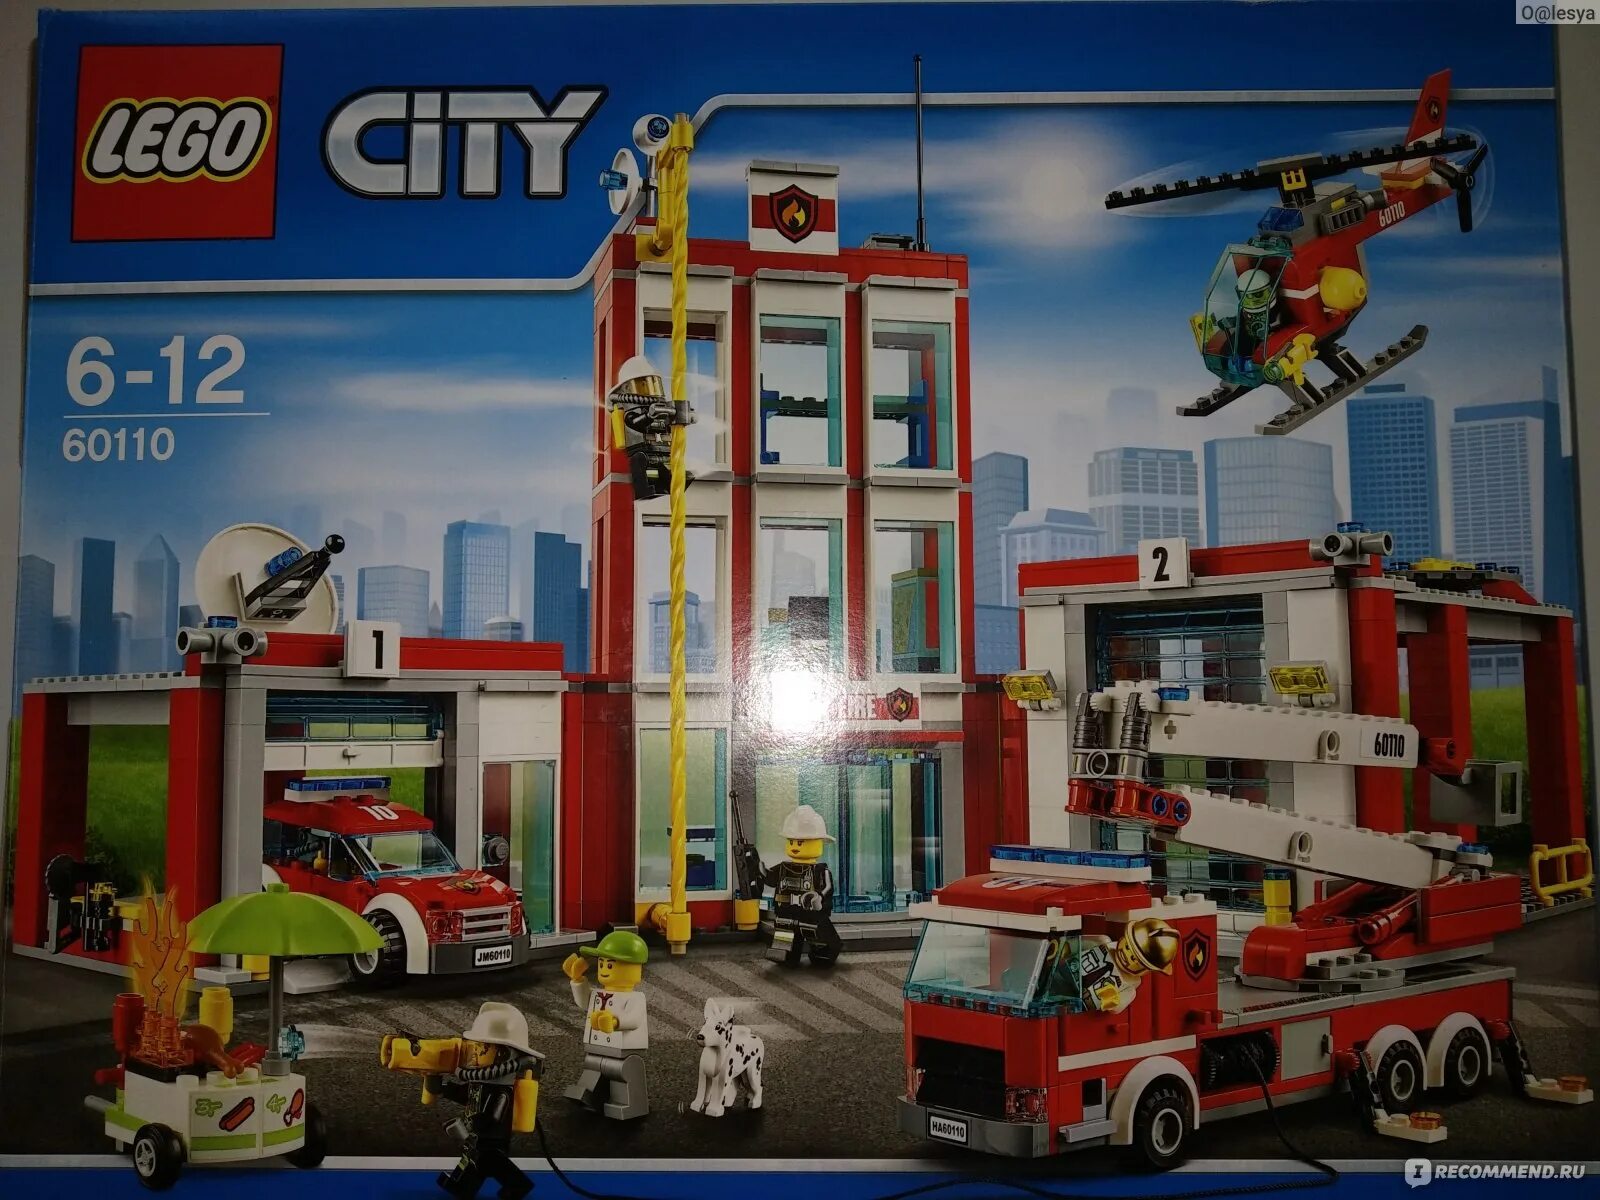 Сити пожарная. LEGO City 60110. Лего Сити пожарная часть 60110. Лего пожарная часть 60110. Конструктор LEGO City 60110 пожарная часть.